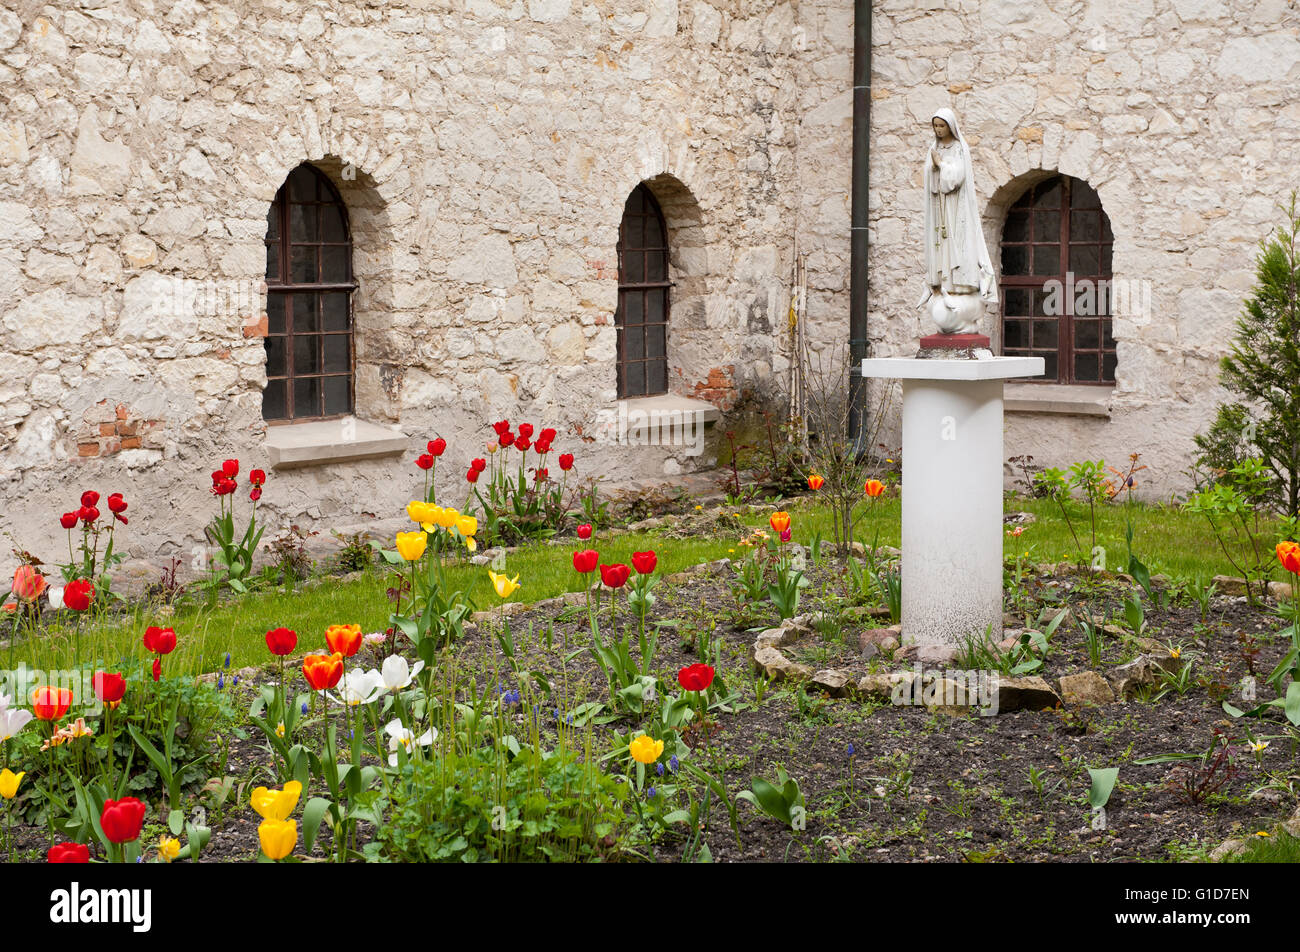 Heilige Mutter Denkmal im Viereck umgeben von Kloster Wände mit Fenstern, klösterliche Lustgarten mit blühenden Tulpen. Stockfoto